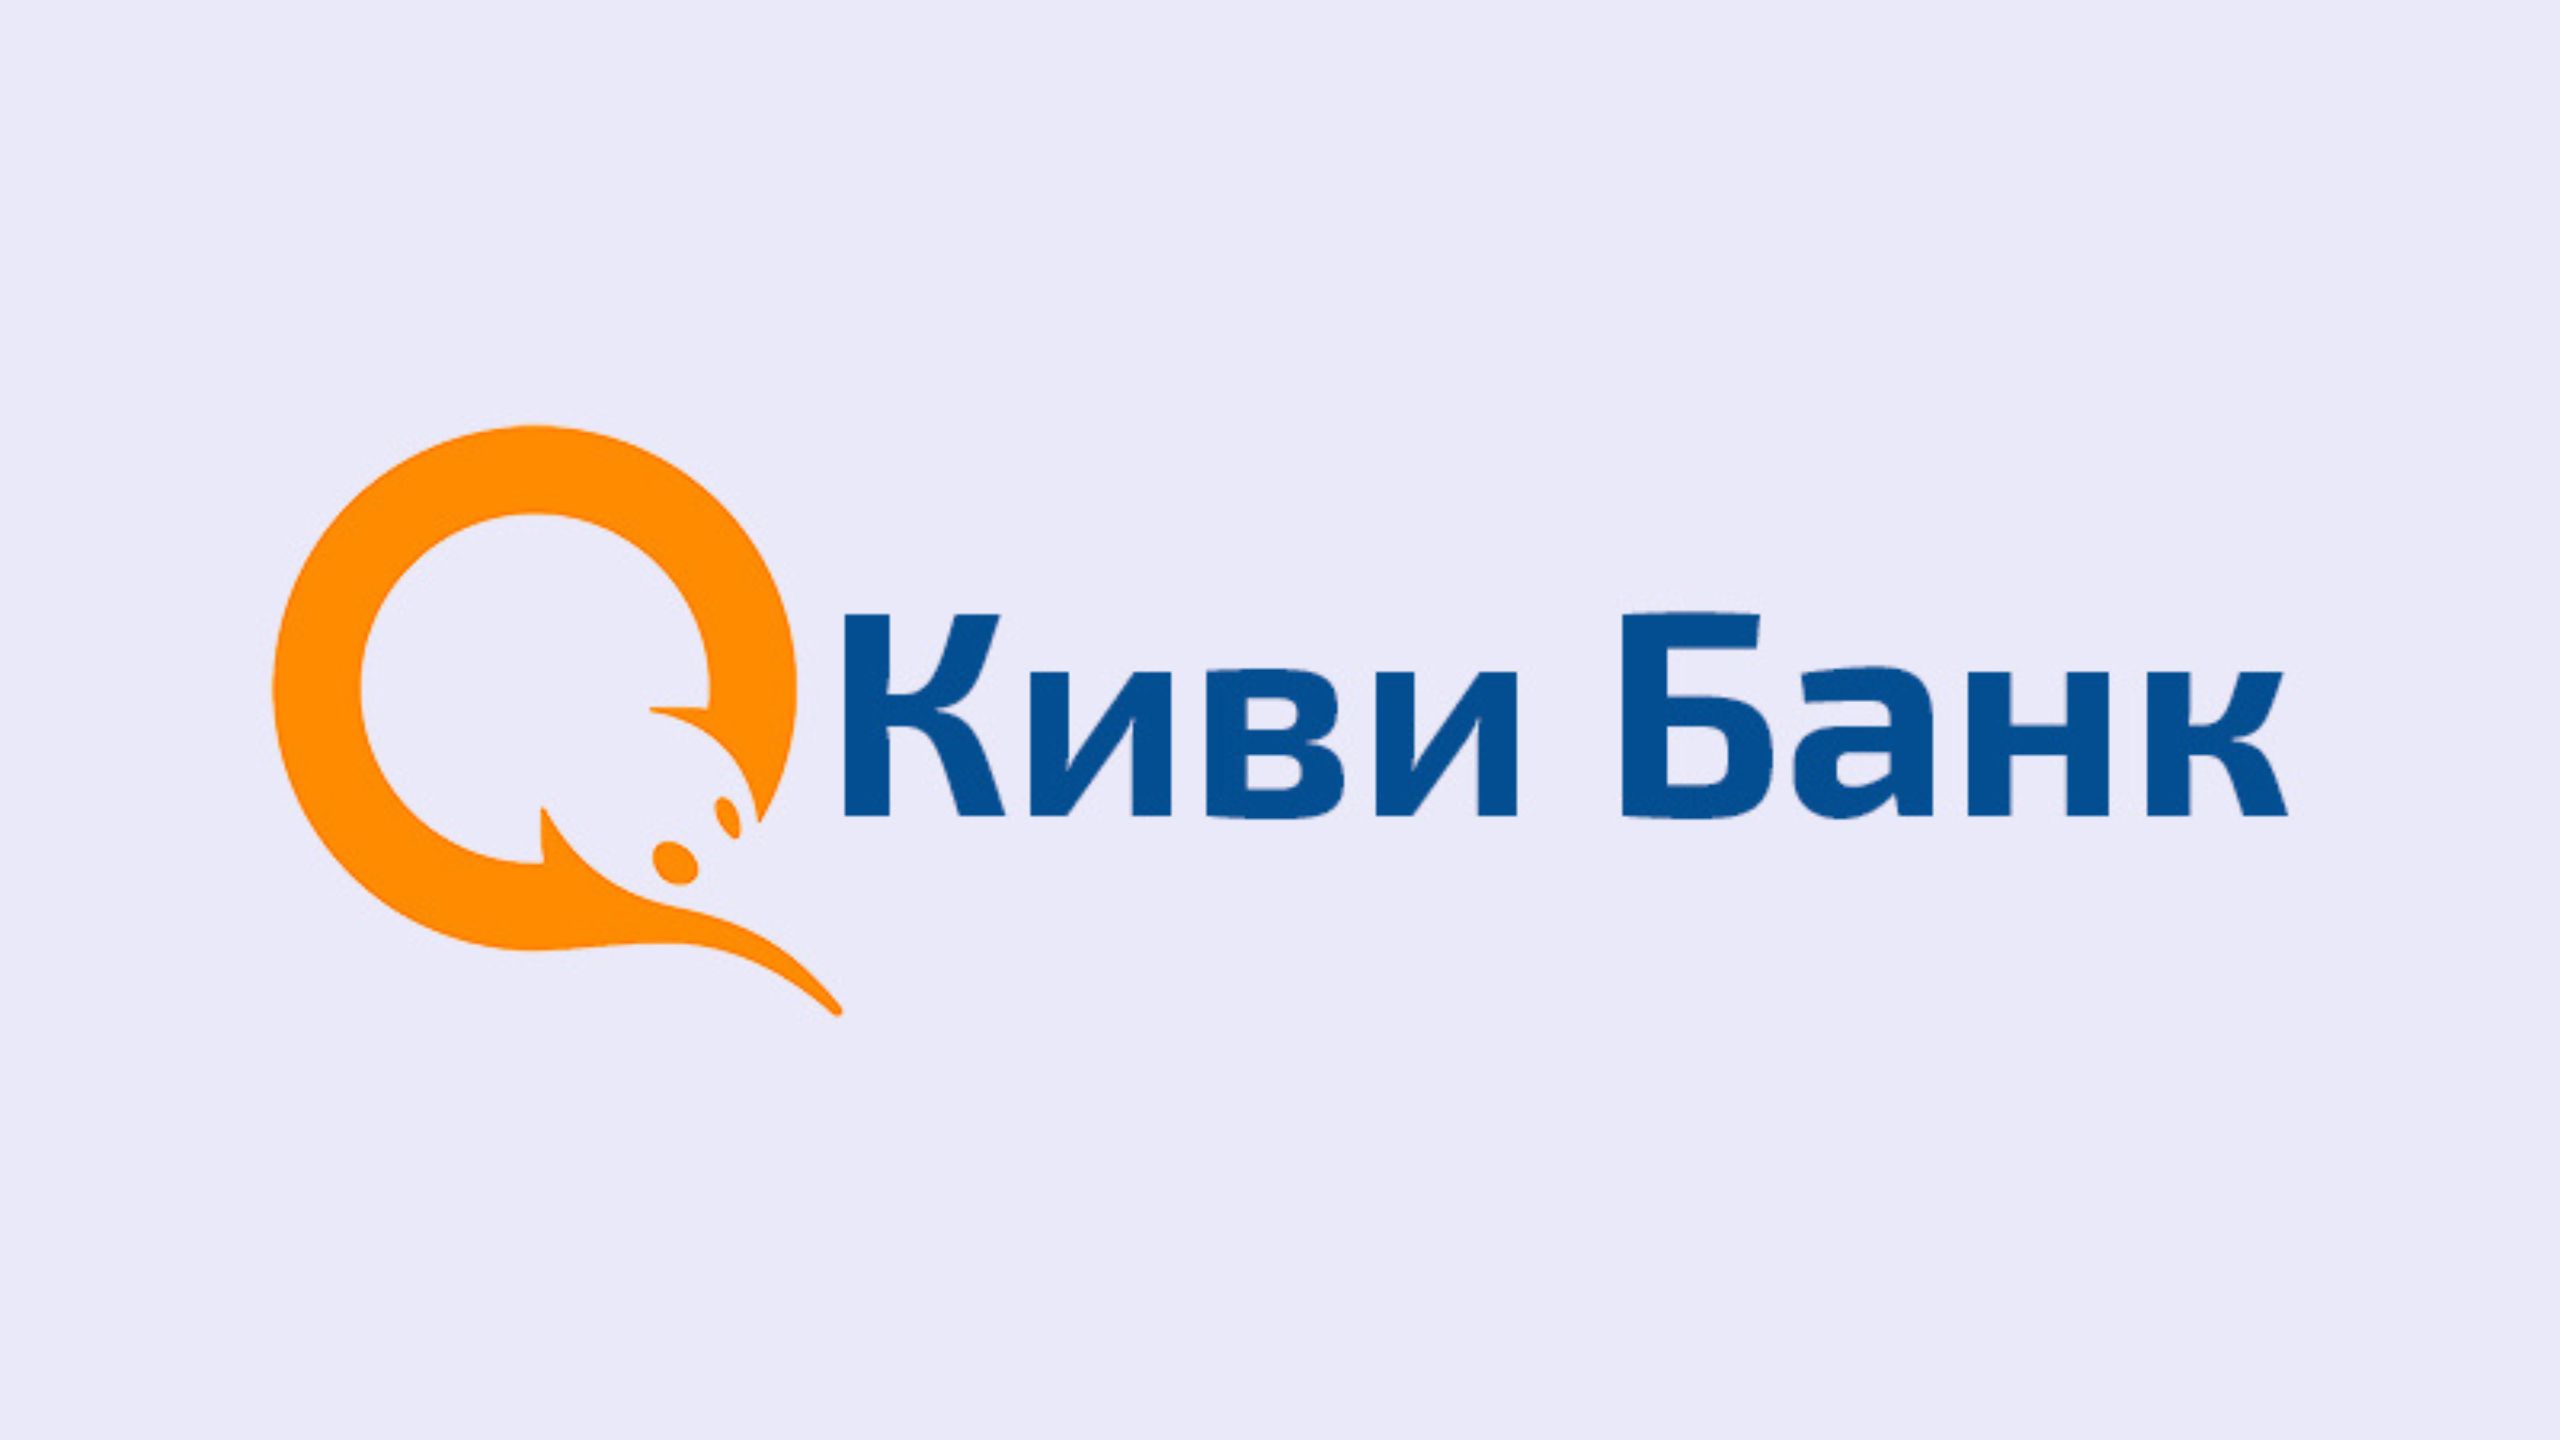 Москва ао киви. Киви банк. QIWI логотип. Киви банк лого. Банк иви.